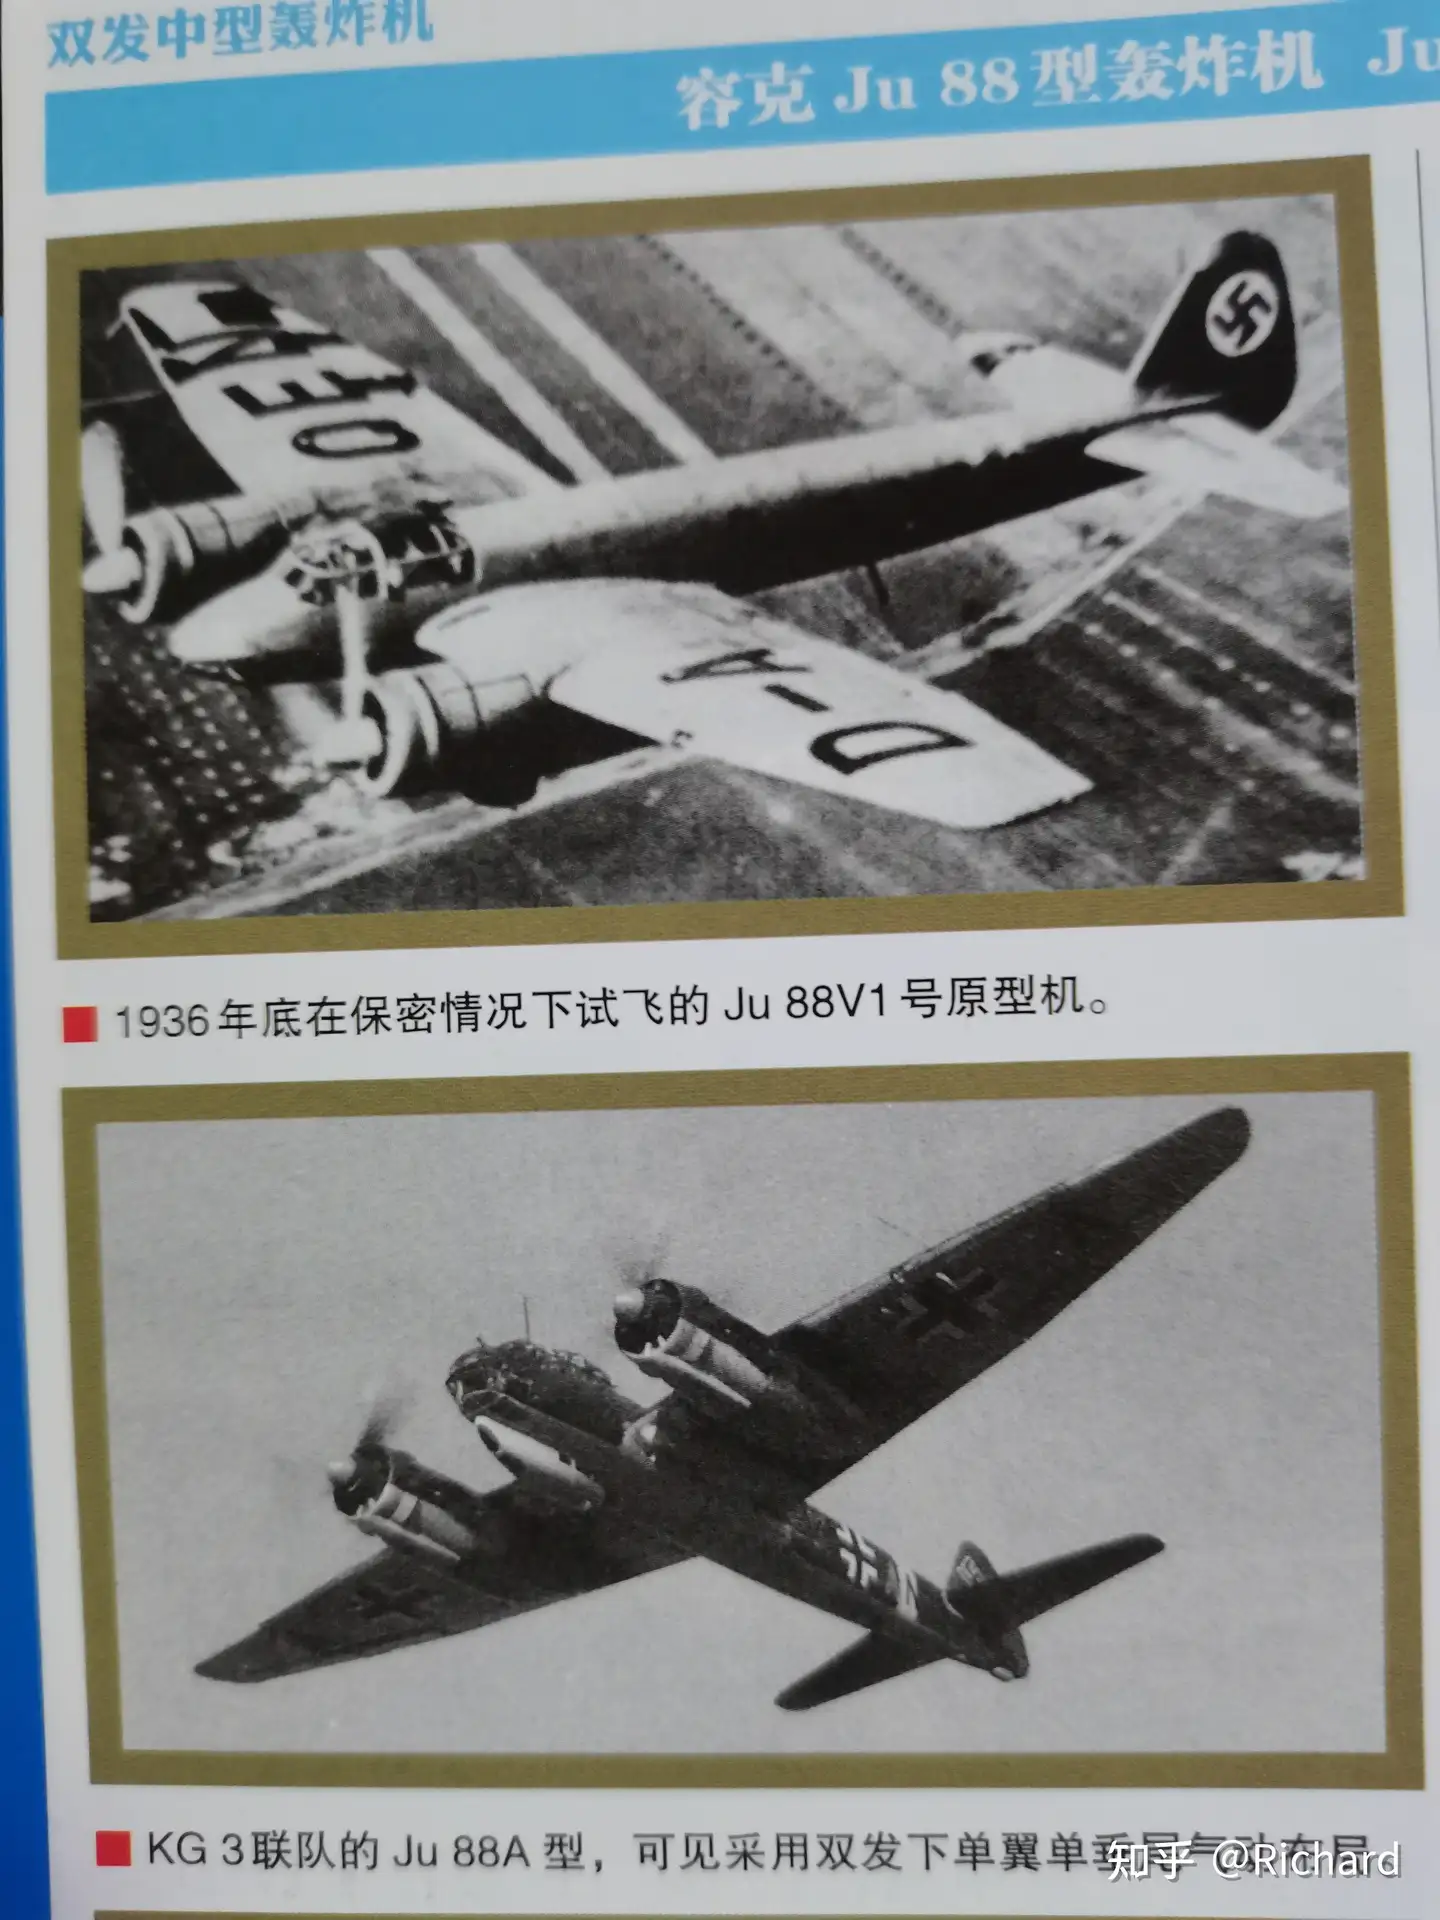 参考资料】二战德空的万能轰炸机——Ju 88轰炸机- 知乎